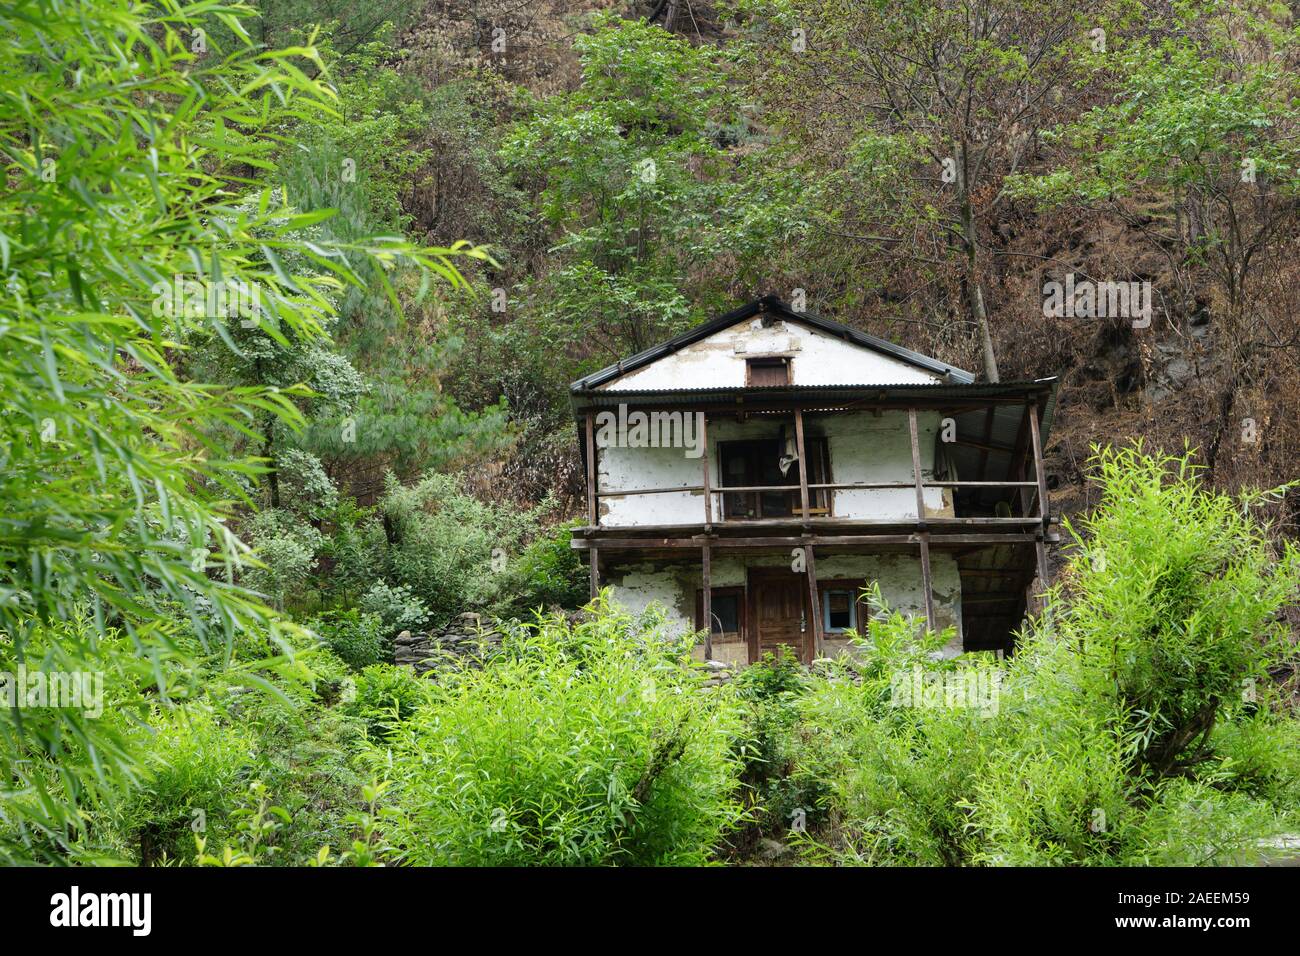 Small house, Village Deori, Kalwari, Tirthan Valley, Himachal Pradesh, India, Asia Stock Photo